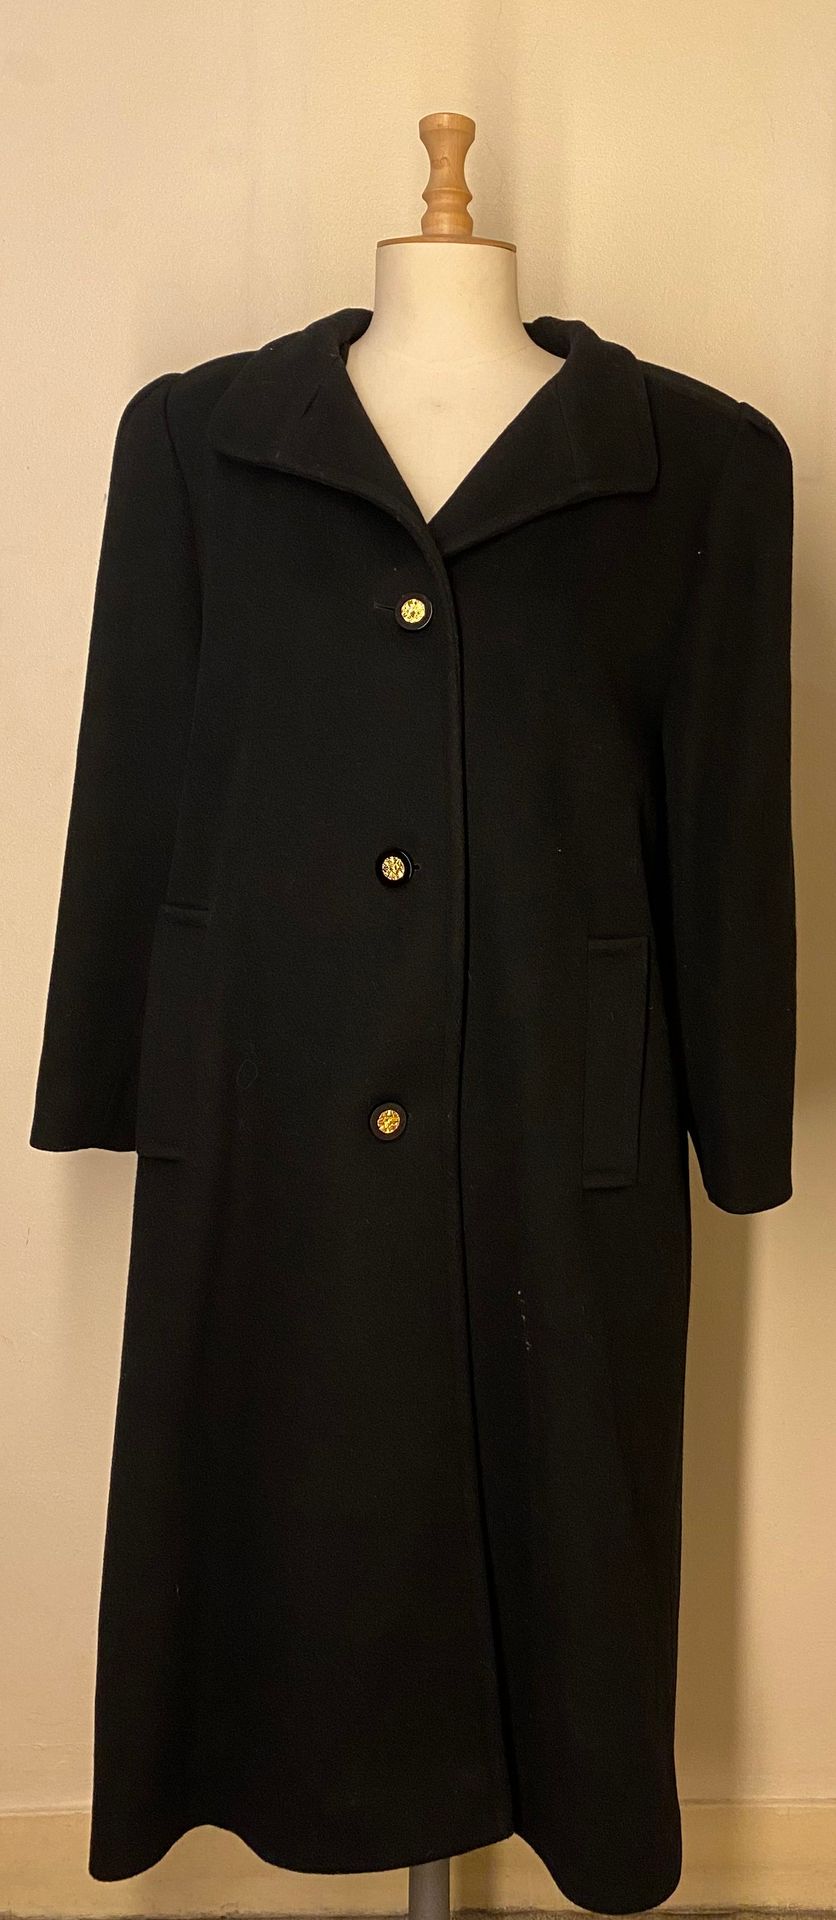 Null 一套两件黑色大衣，一件为剪绒羊皮，另一件为羊绒。尺寸42-44



拍卖会将于2021年12月20日（星期一）在巴黎第十五区举行，只接受预约。


&hellip;